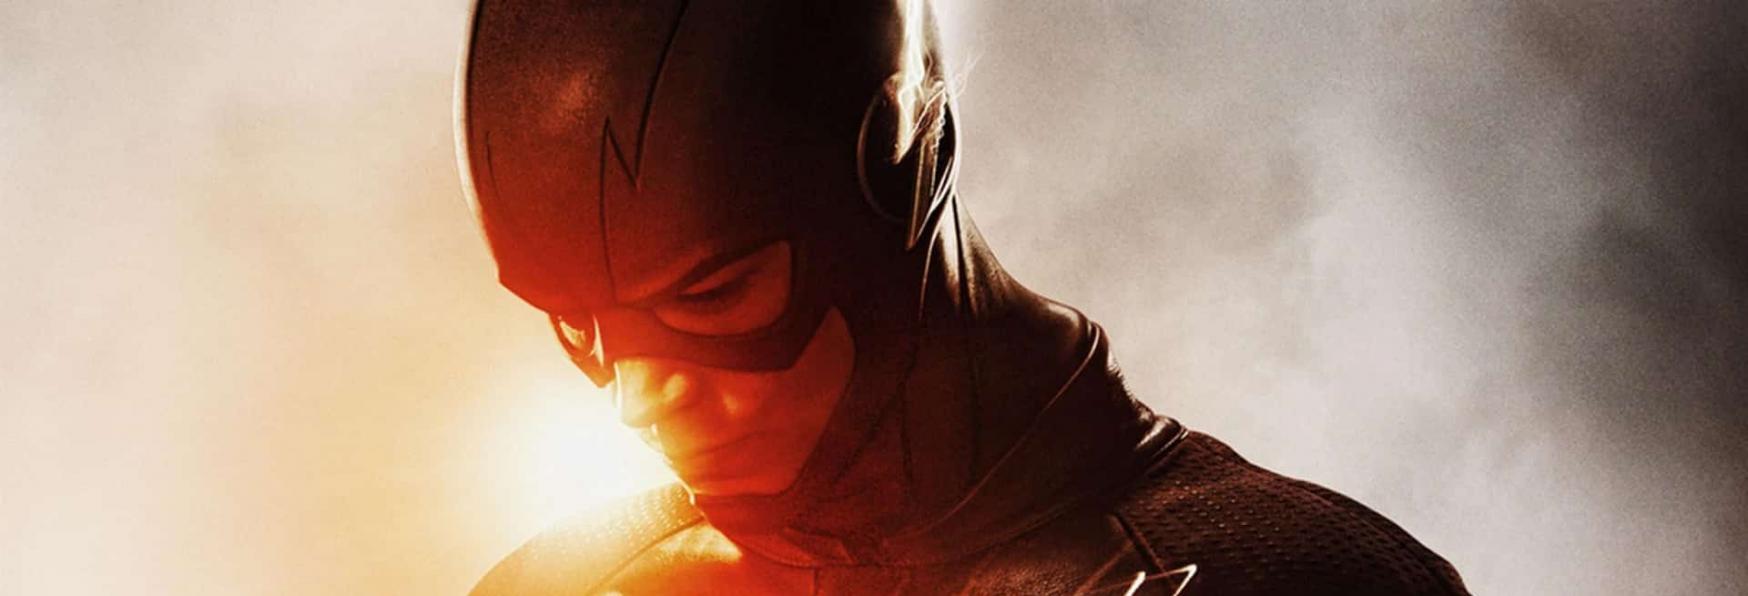 The Flash 7: Trama, Cast, Data d'Uscita e Trailer della serie targata The CW